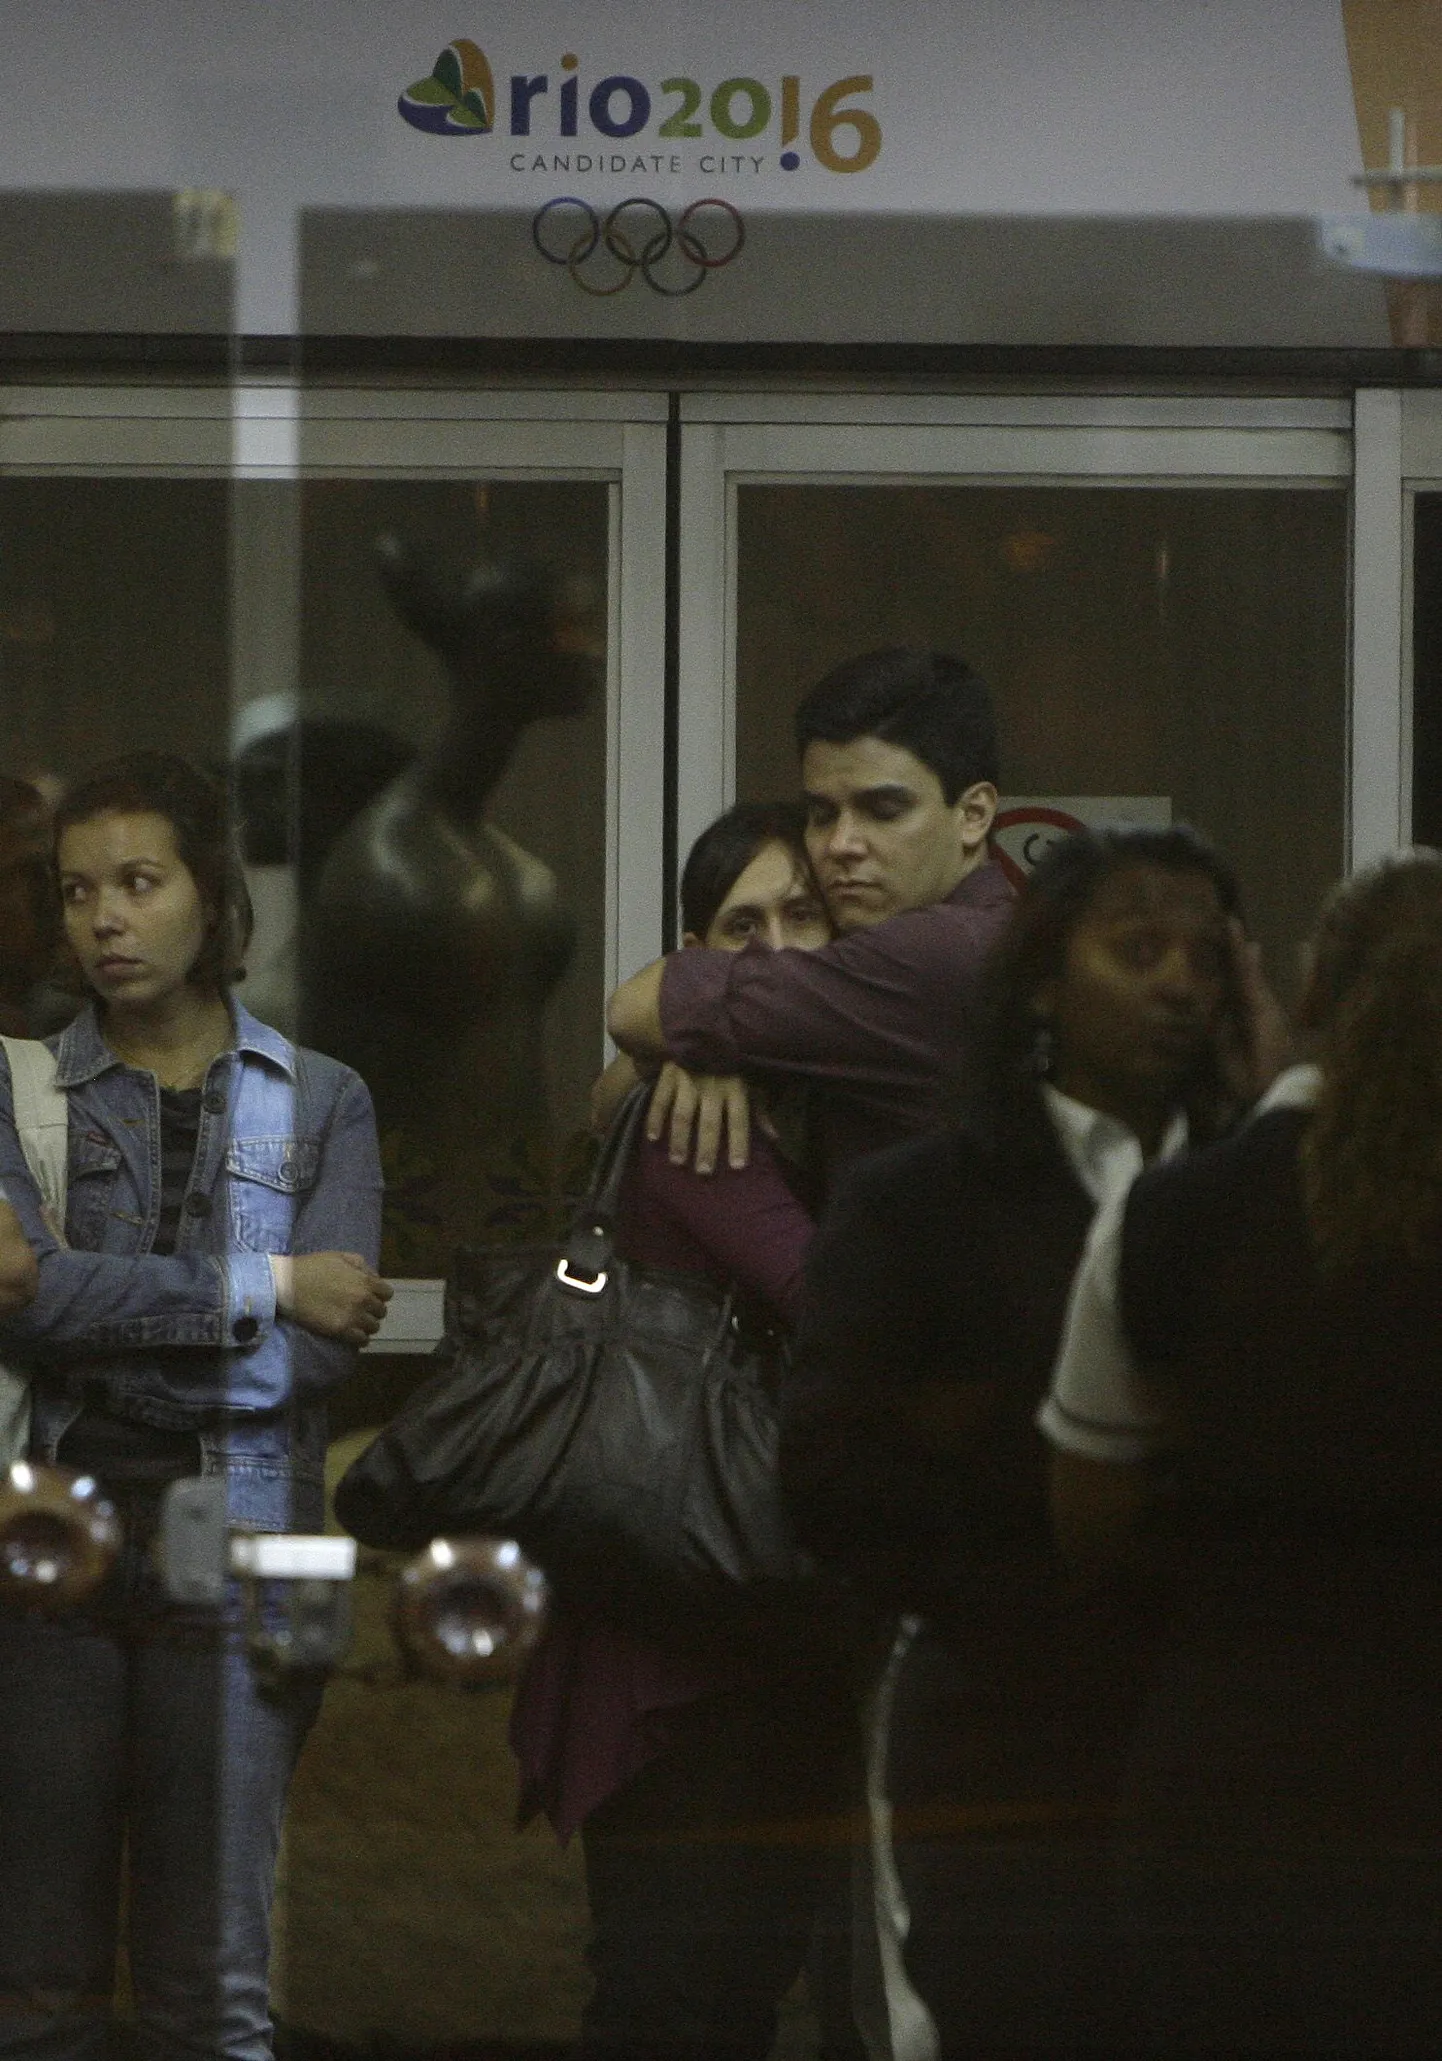 Brasiilias kuulutati välja lein. Fotol sugulased ja sõbrad  Rio de Janeiro Tom Jobimi lennujaamas Air France`i lennul 447 olnute kohta teateid ootamas